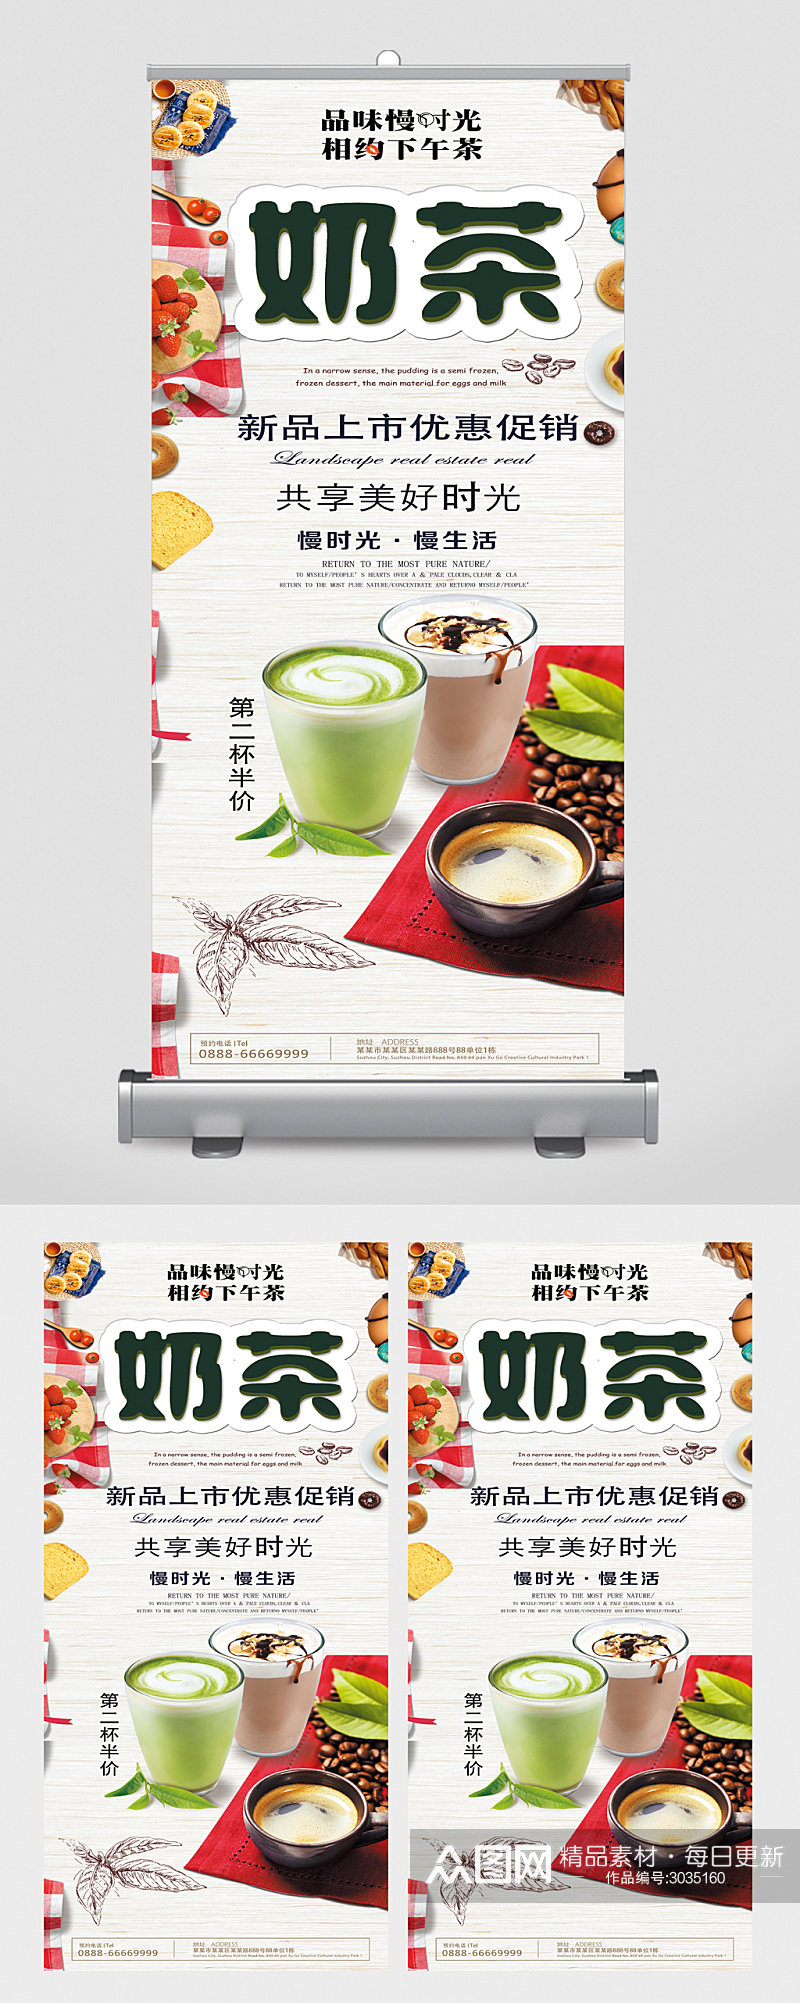 奶茶新品上市优惠促销易拉宝素材